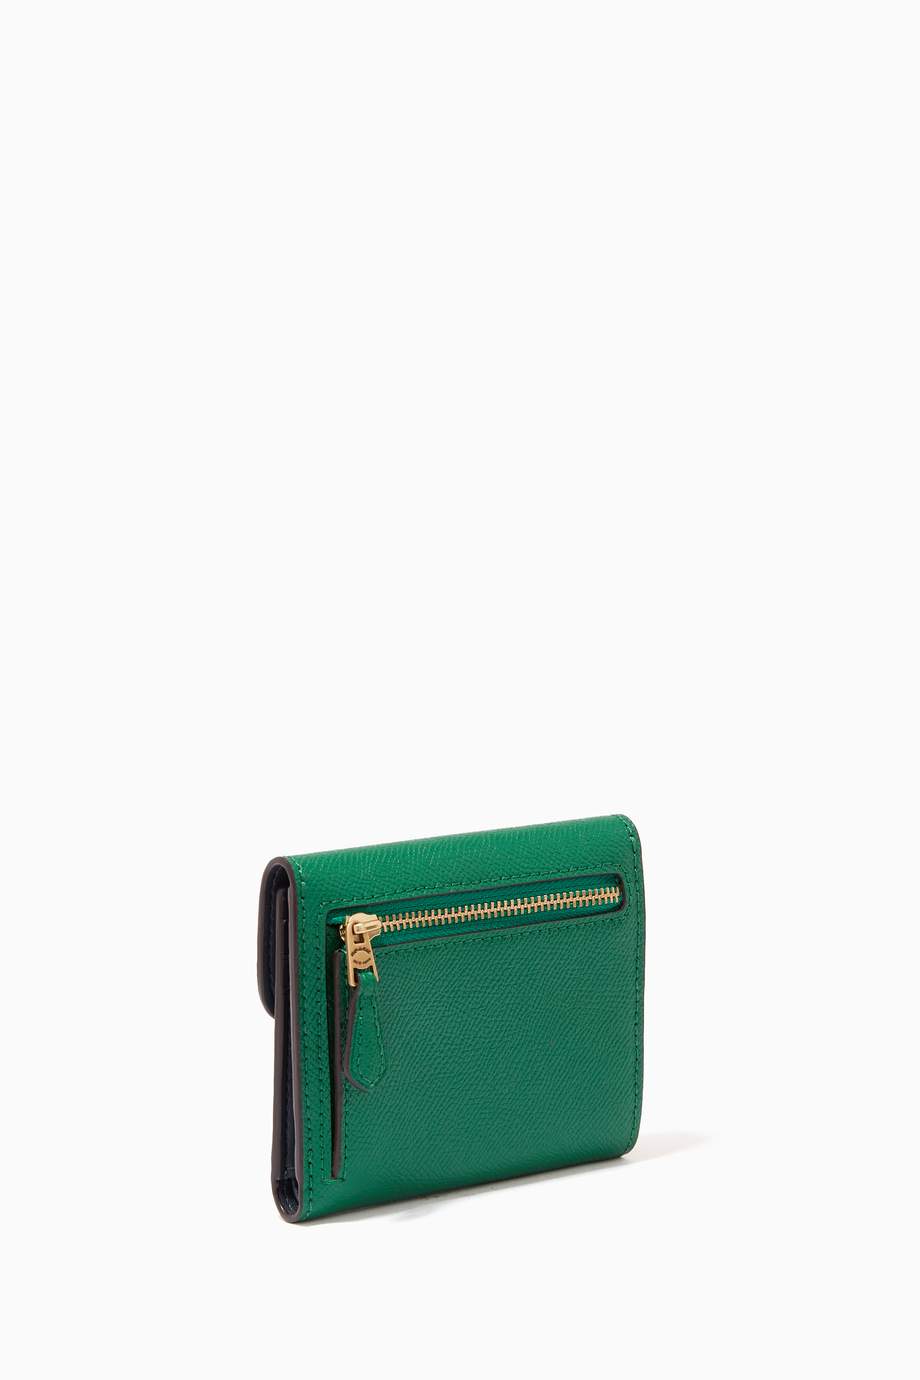 Shop Coach Green Small Wyn Wallet in Crossgrain Leather for Women ...